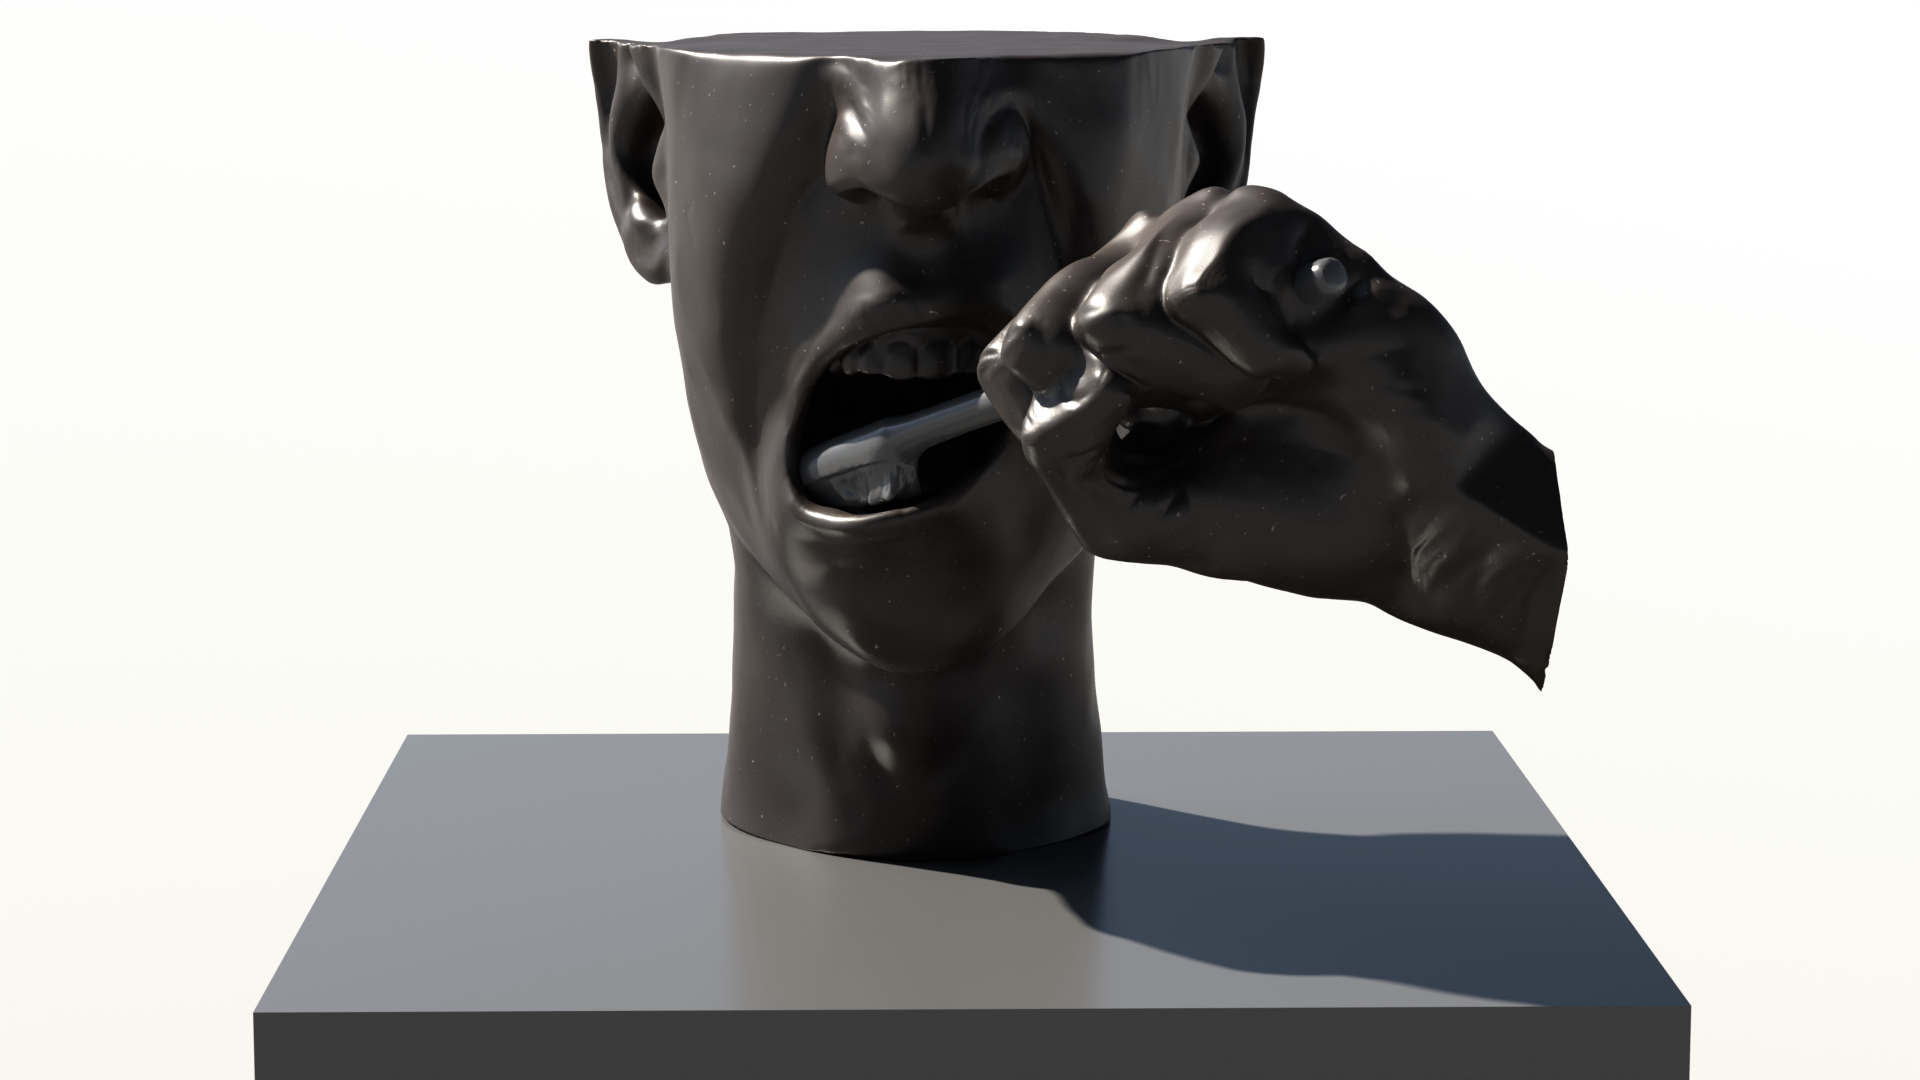 Rzeźba cyfrowa przedstawiająca wycinek ludzkiej głowy i dłoń trzymającąszczoteczkę do zębów. Kompozycja skupia się na ukazaniu otwartych ust i myciazębów.